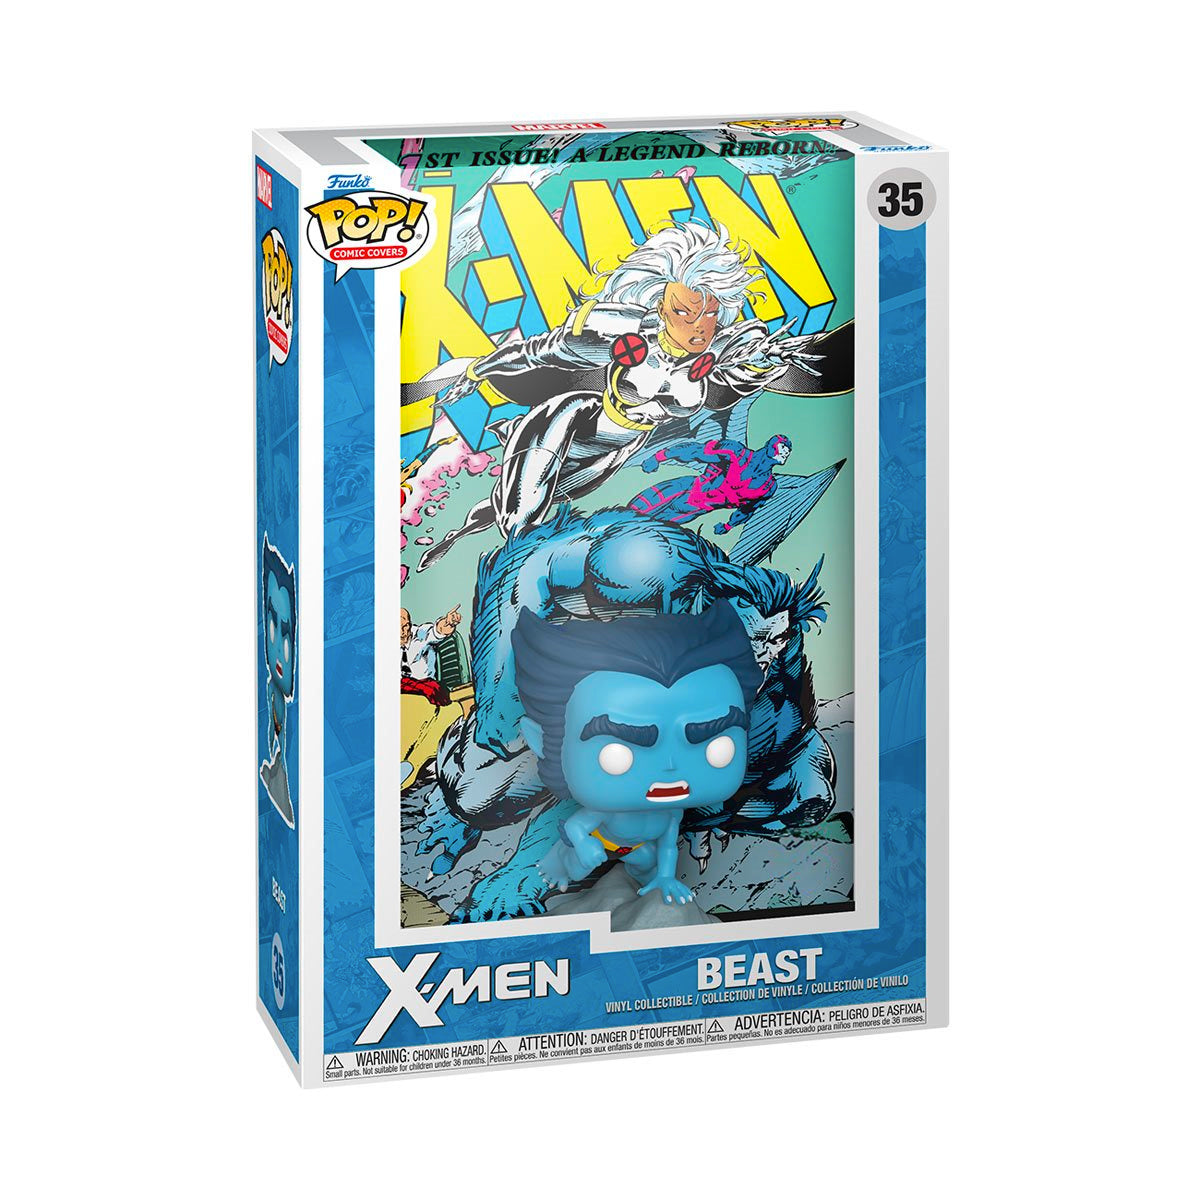 Funko Pop Comic Cover: Marvel X Men - Num 1 1991 Bestia Exclusivo